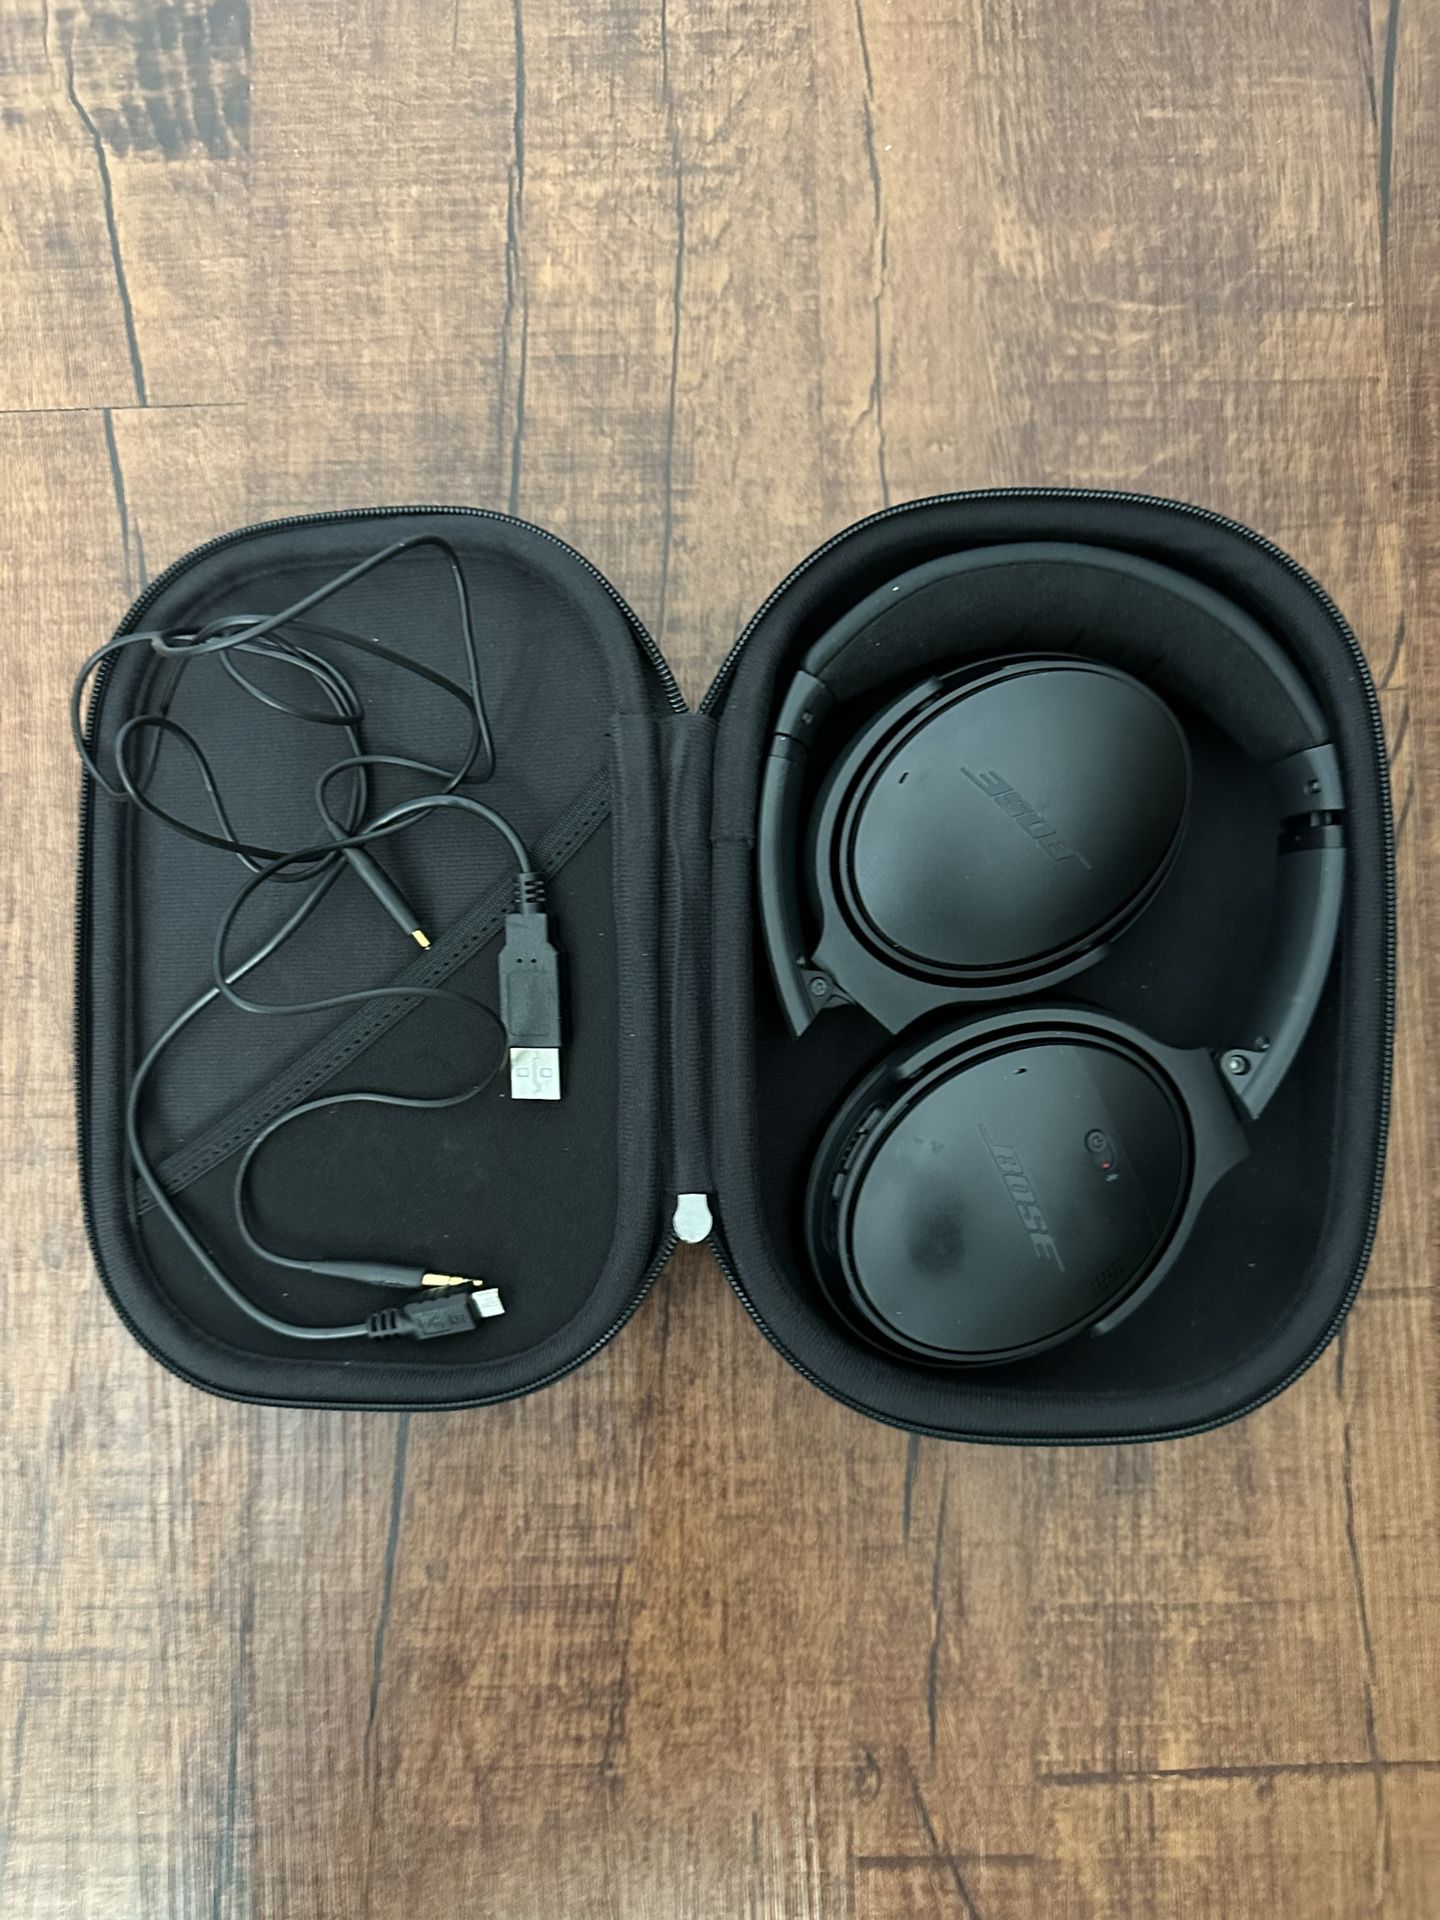 Bose Quiet Comfort 35 II Headphones (wireless)